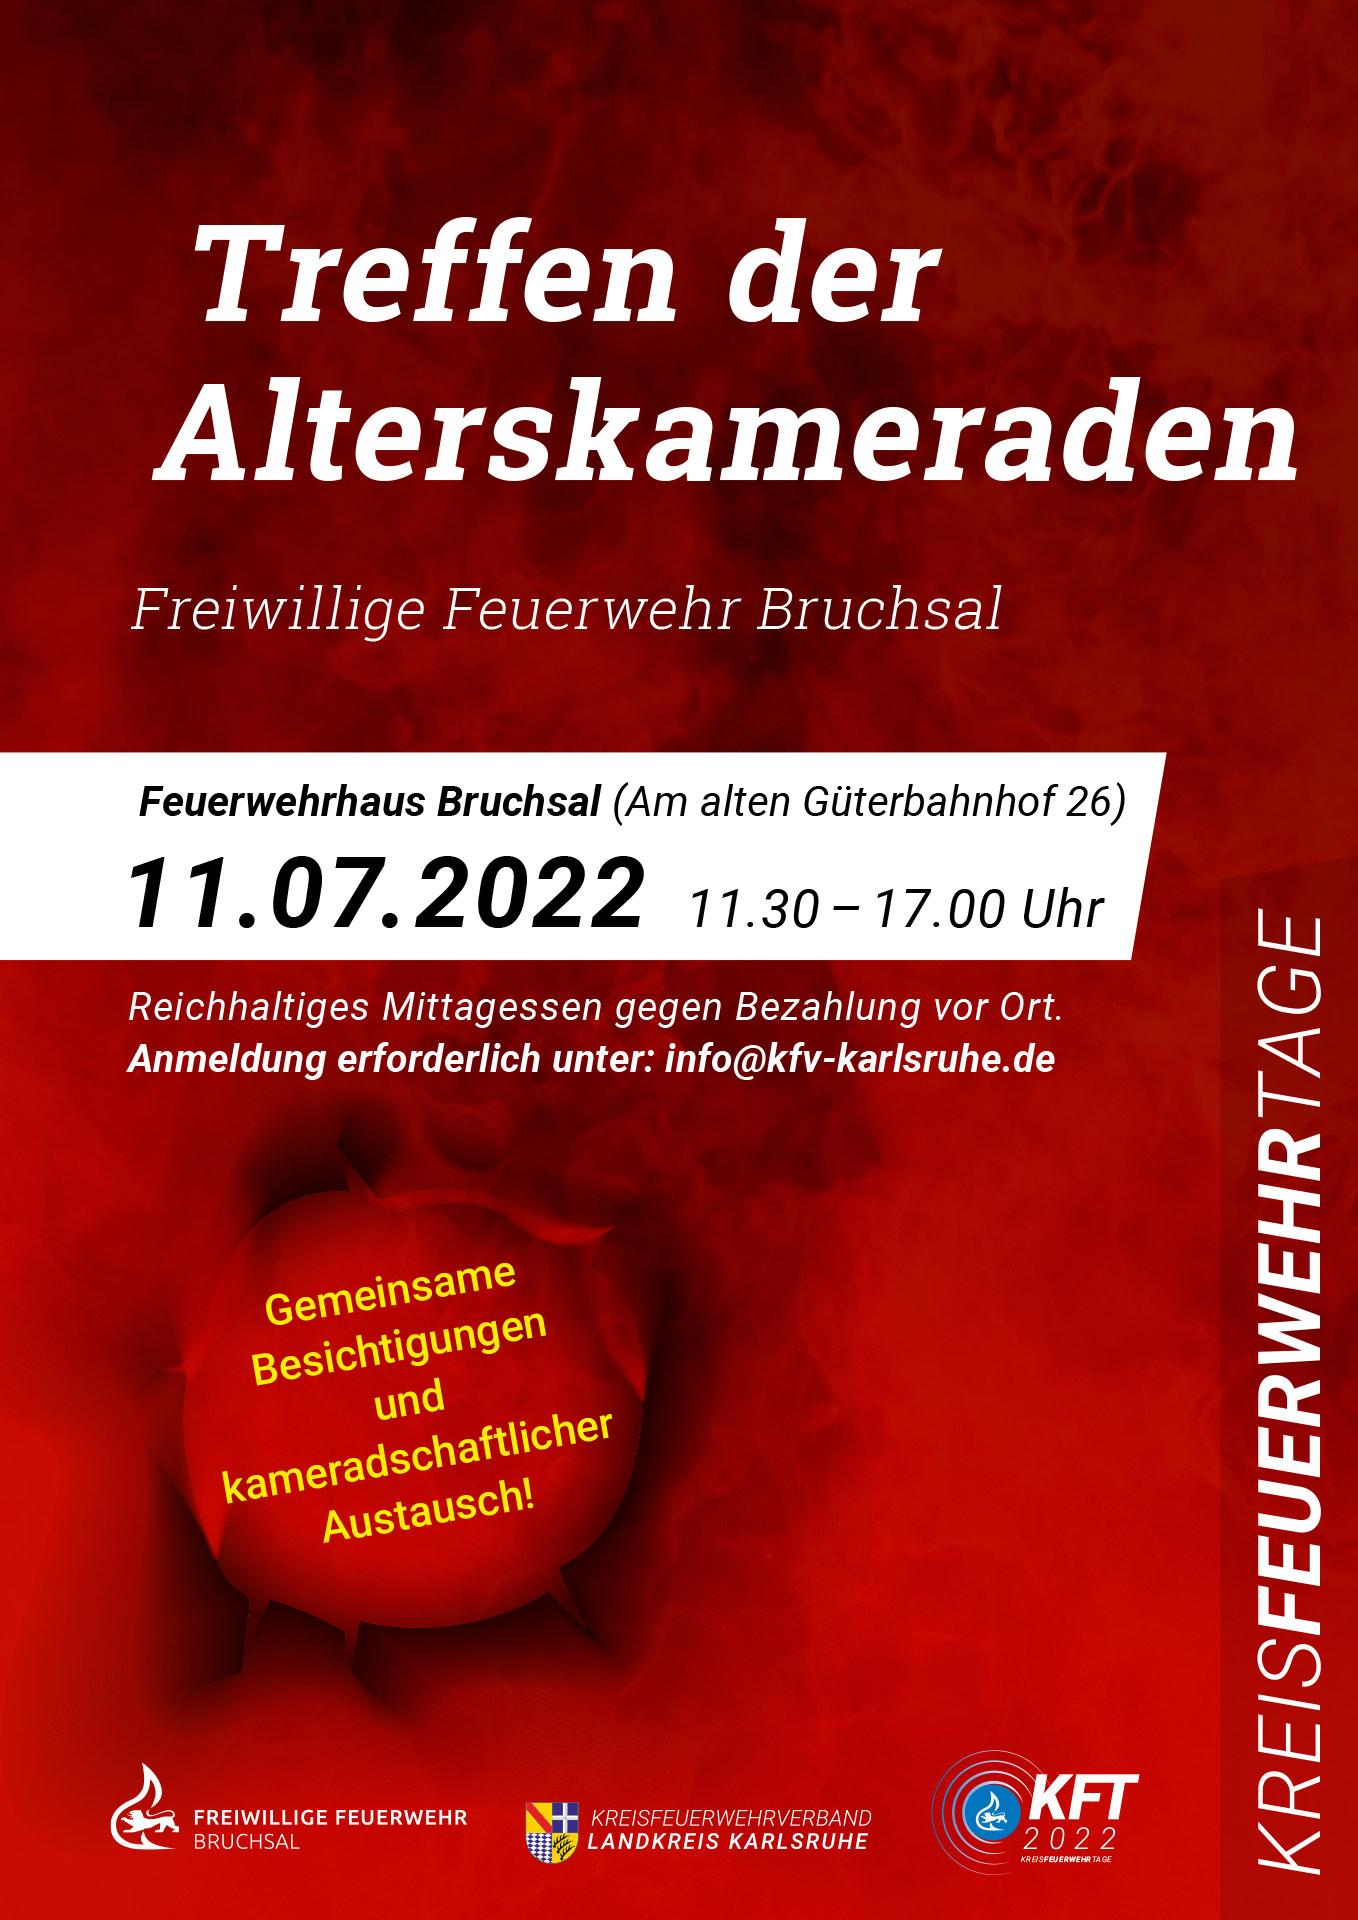 KFT_2022_Plakat_TreffenderAlterskameraden_0622_Bruchsal